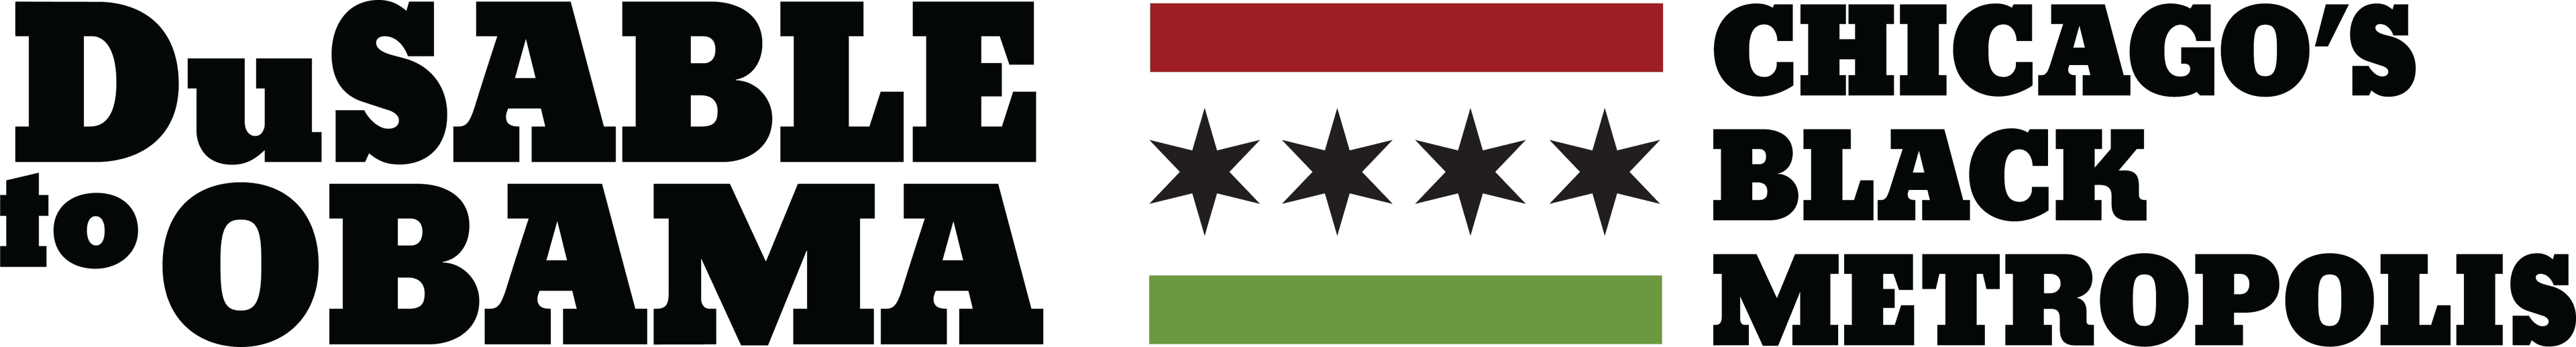 DuSable to Obama: Chicago's Black Metropolis logo